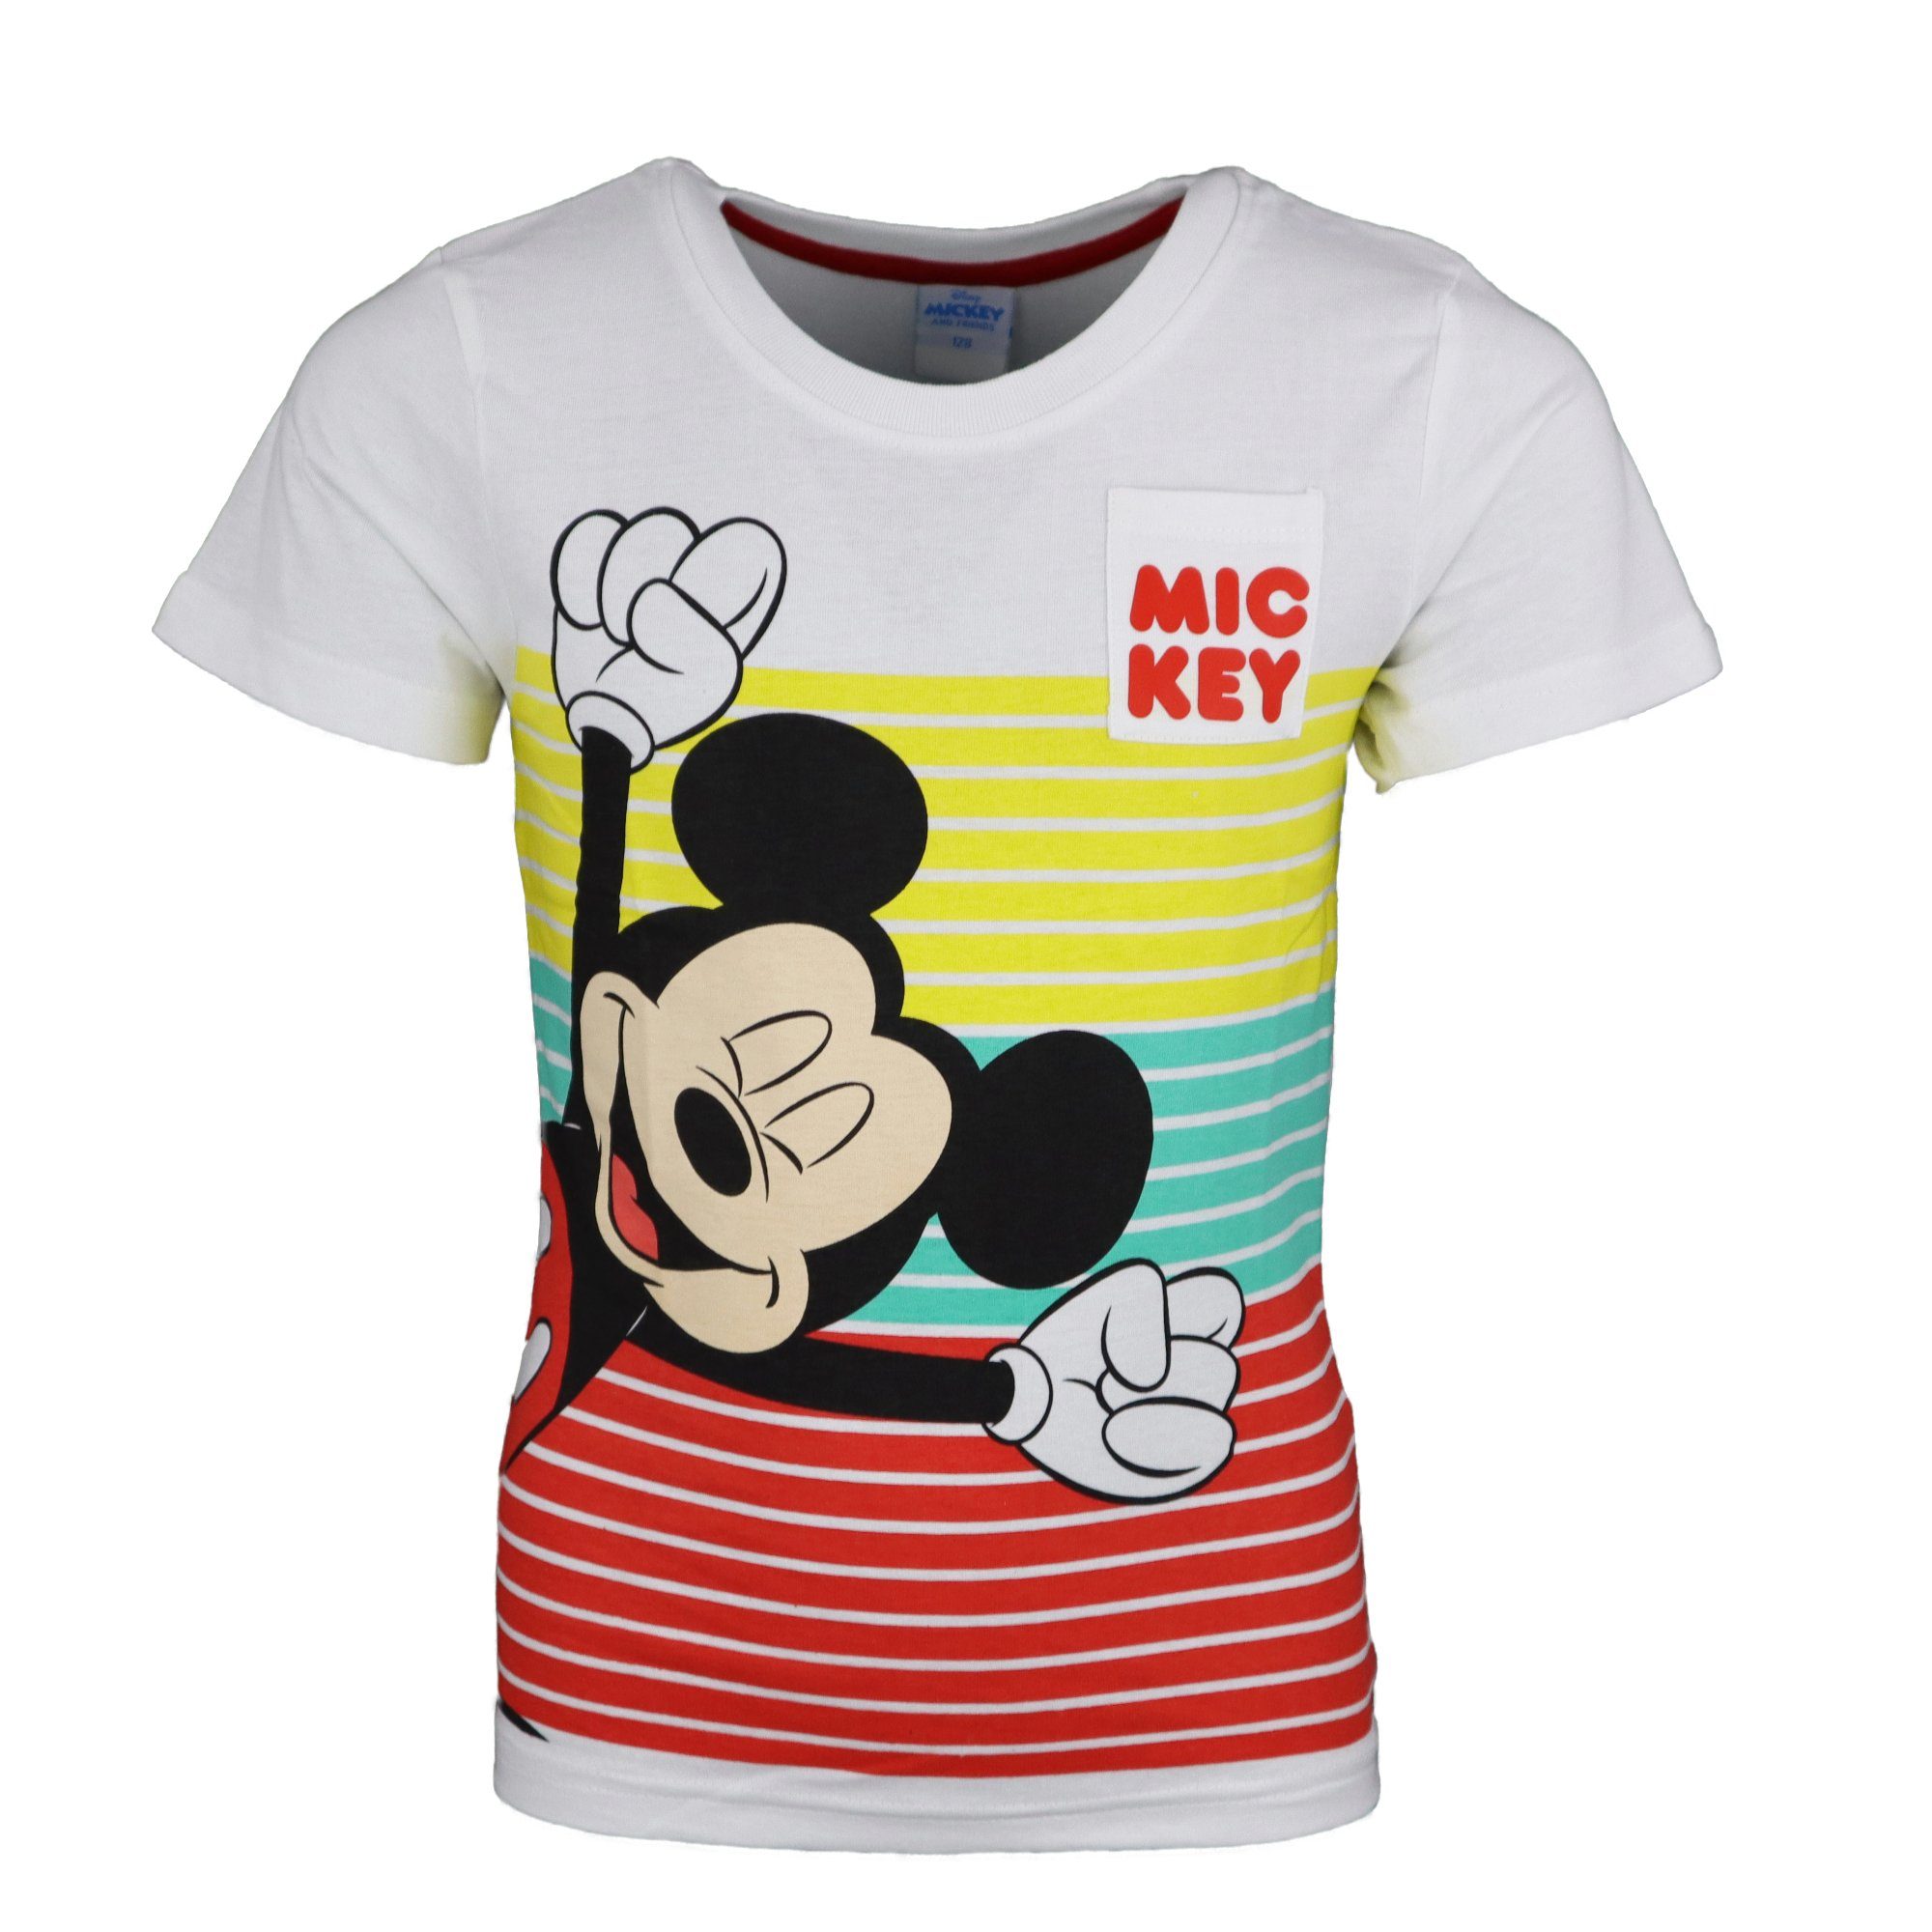 Disney Mickey Mouse Print-Shirt Mickey Maus Kinder Jungen kurzarm T-Shirt Gr. 98 bis 128, 100% Baumwolle